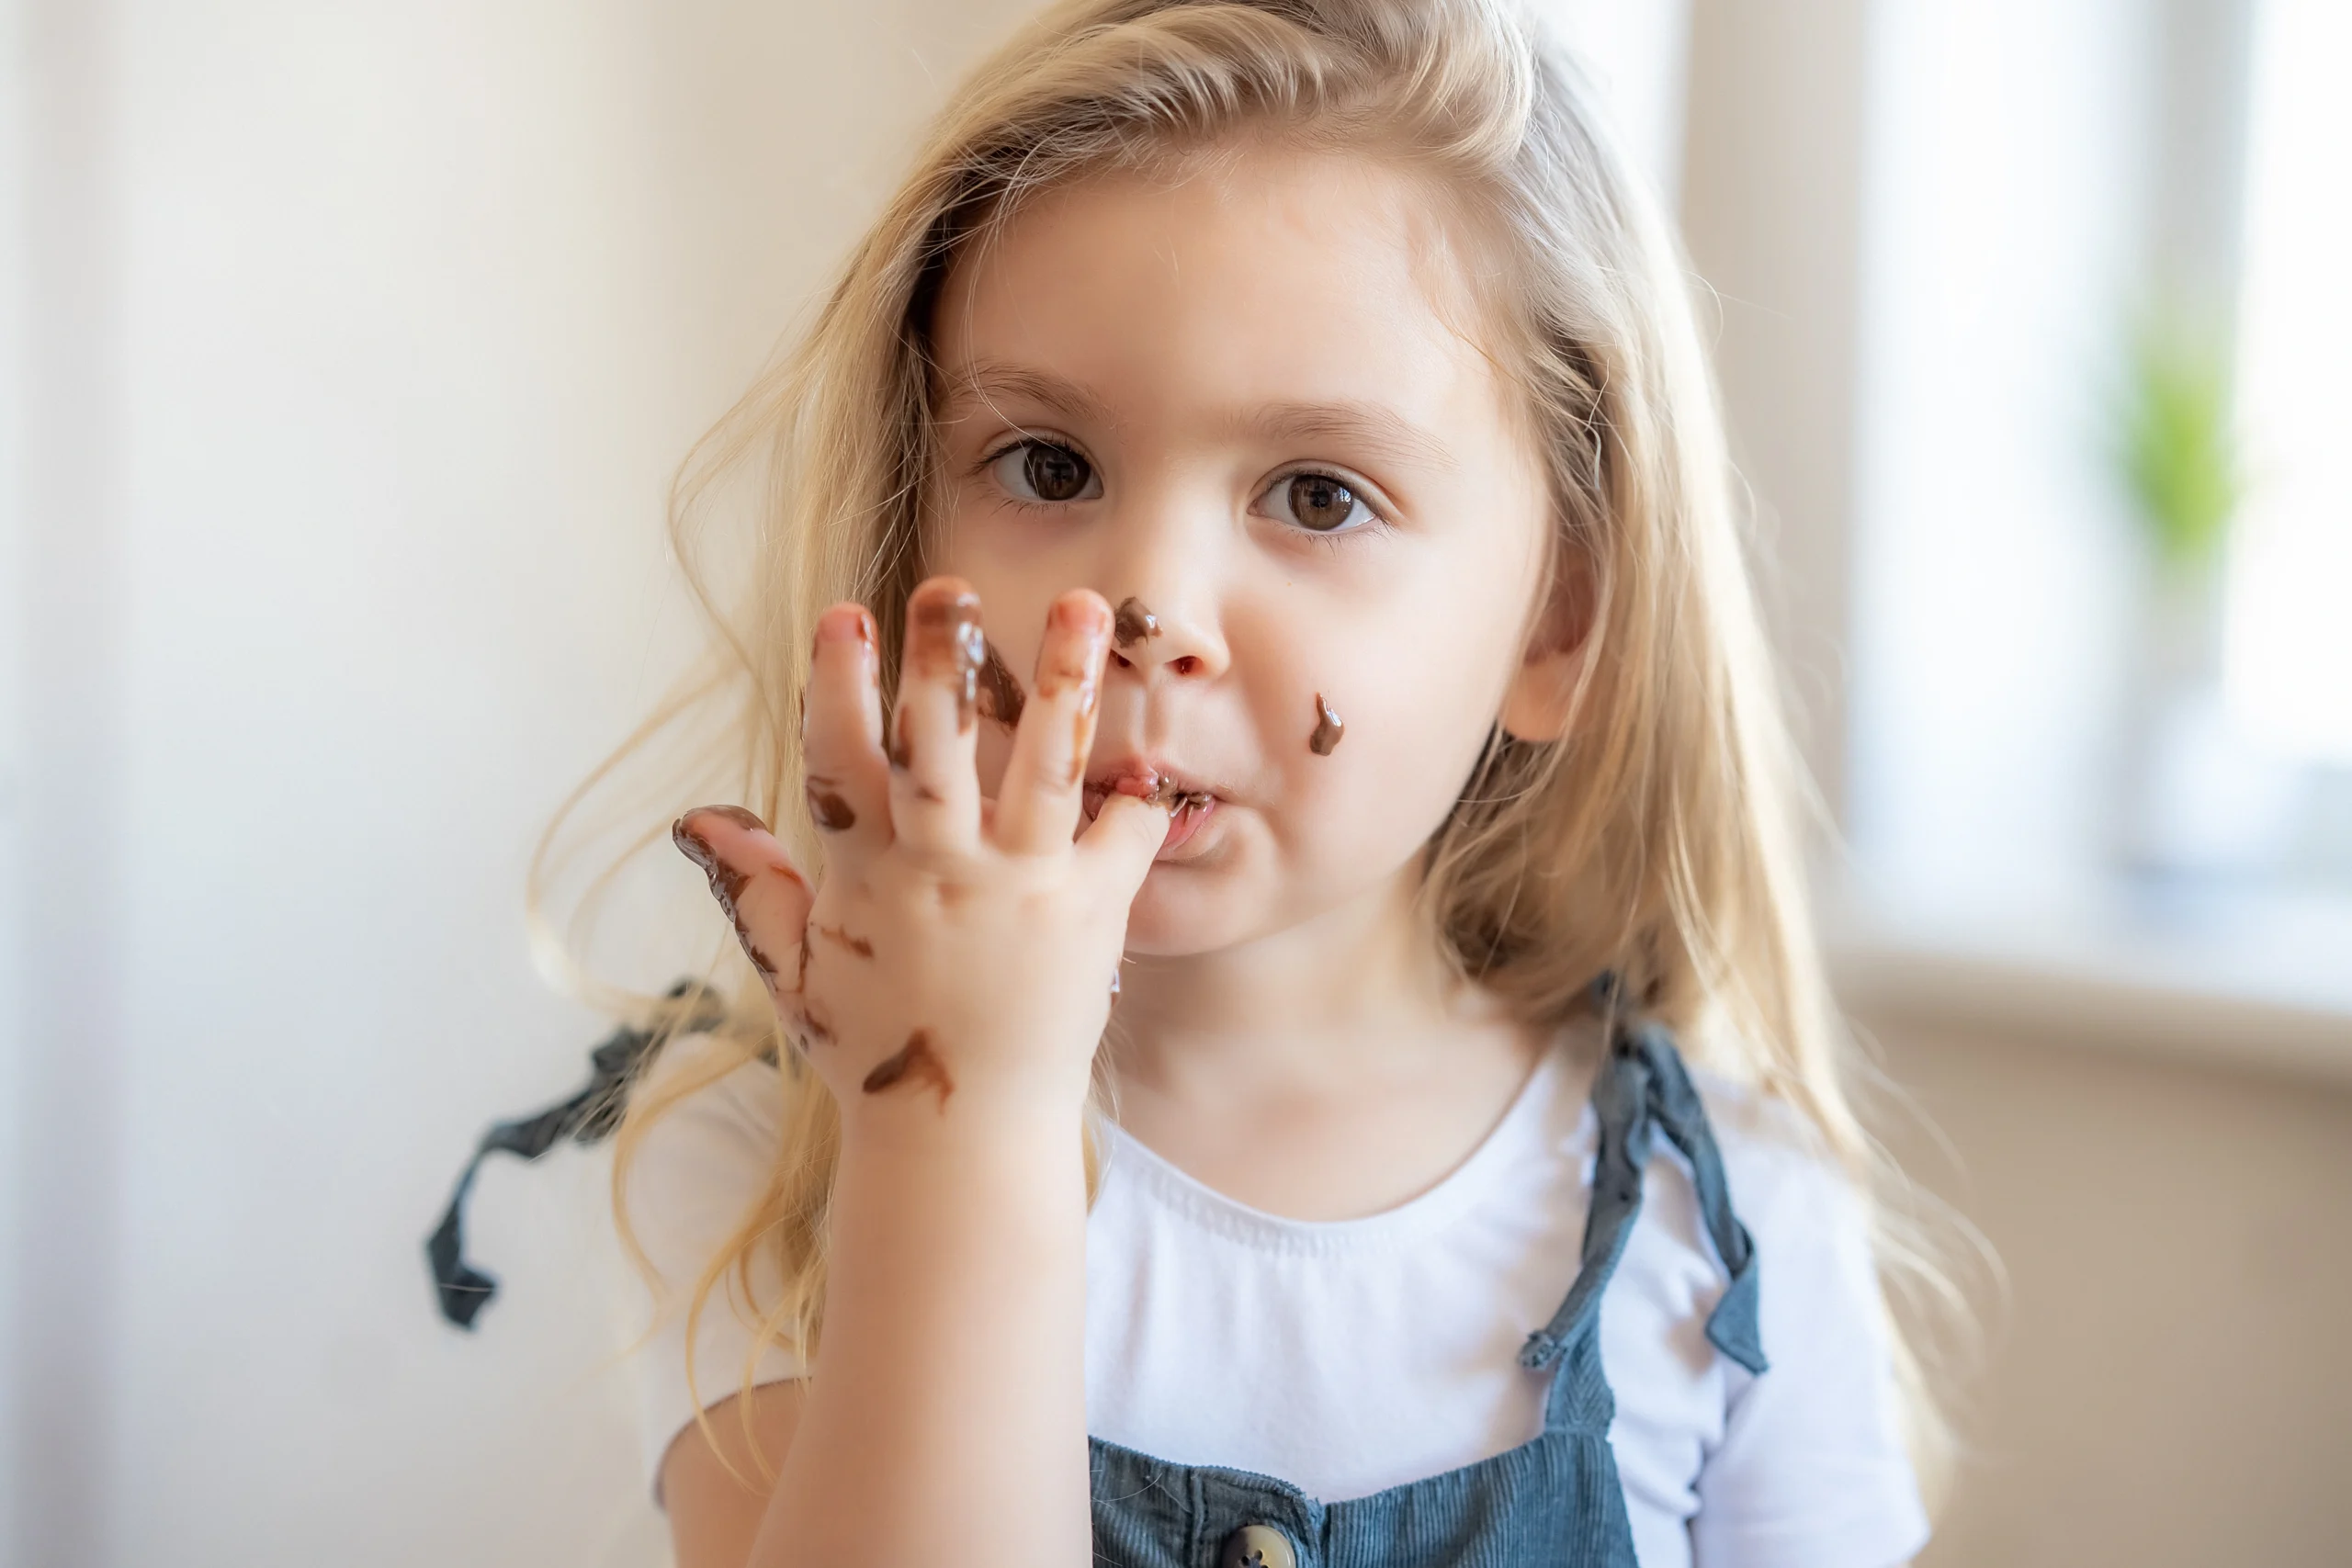 Czekoladki probiotyczne dla dzieci - jak i kiedy je stosować? Mała dziewczynka w długich blond włosach oblizuje palce po zjedzeniu czekolady.